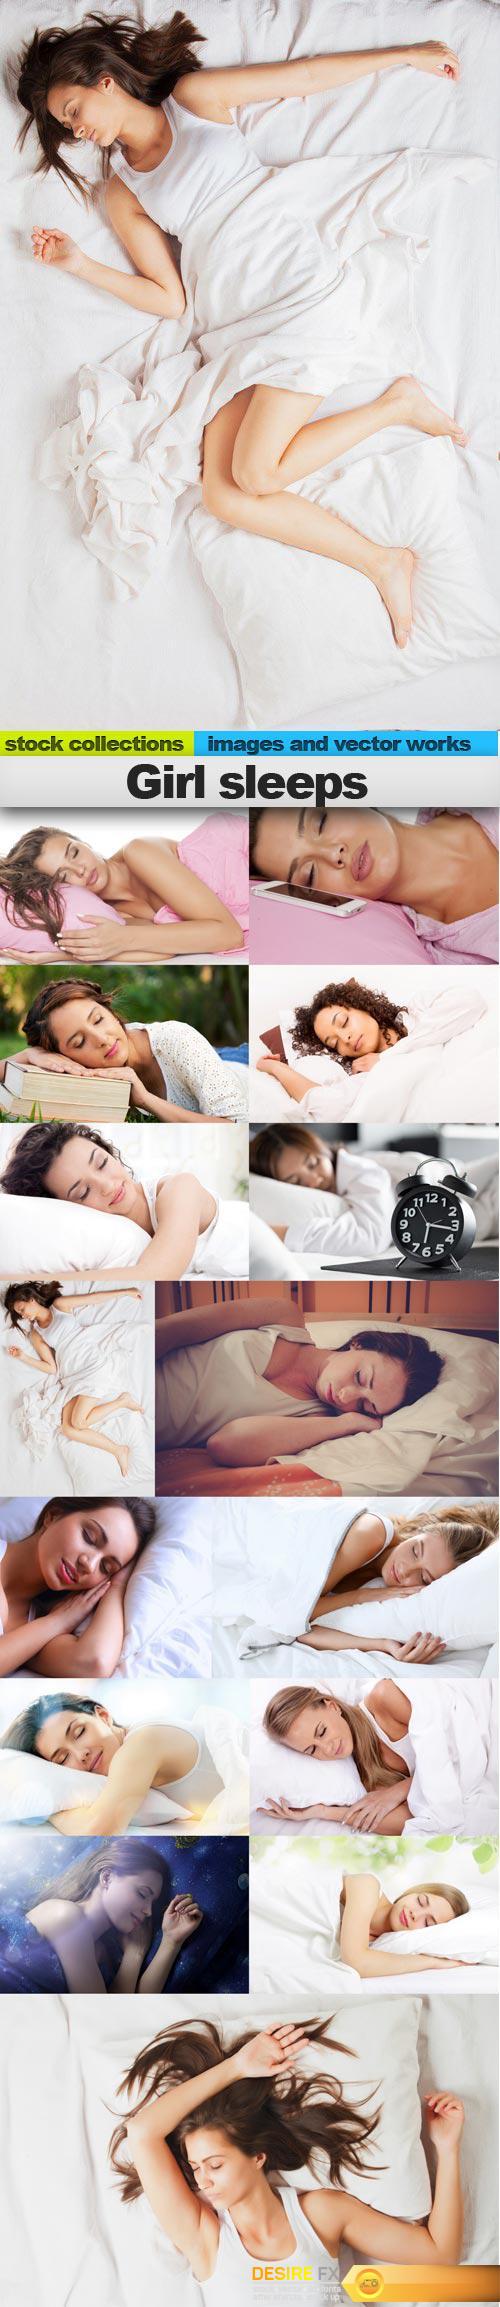 Girl sleeps, 15 x UHQ JPEG